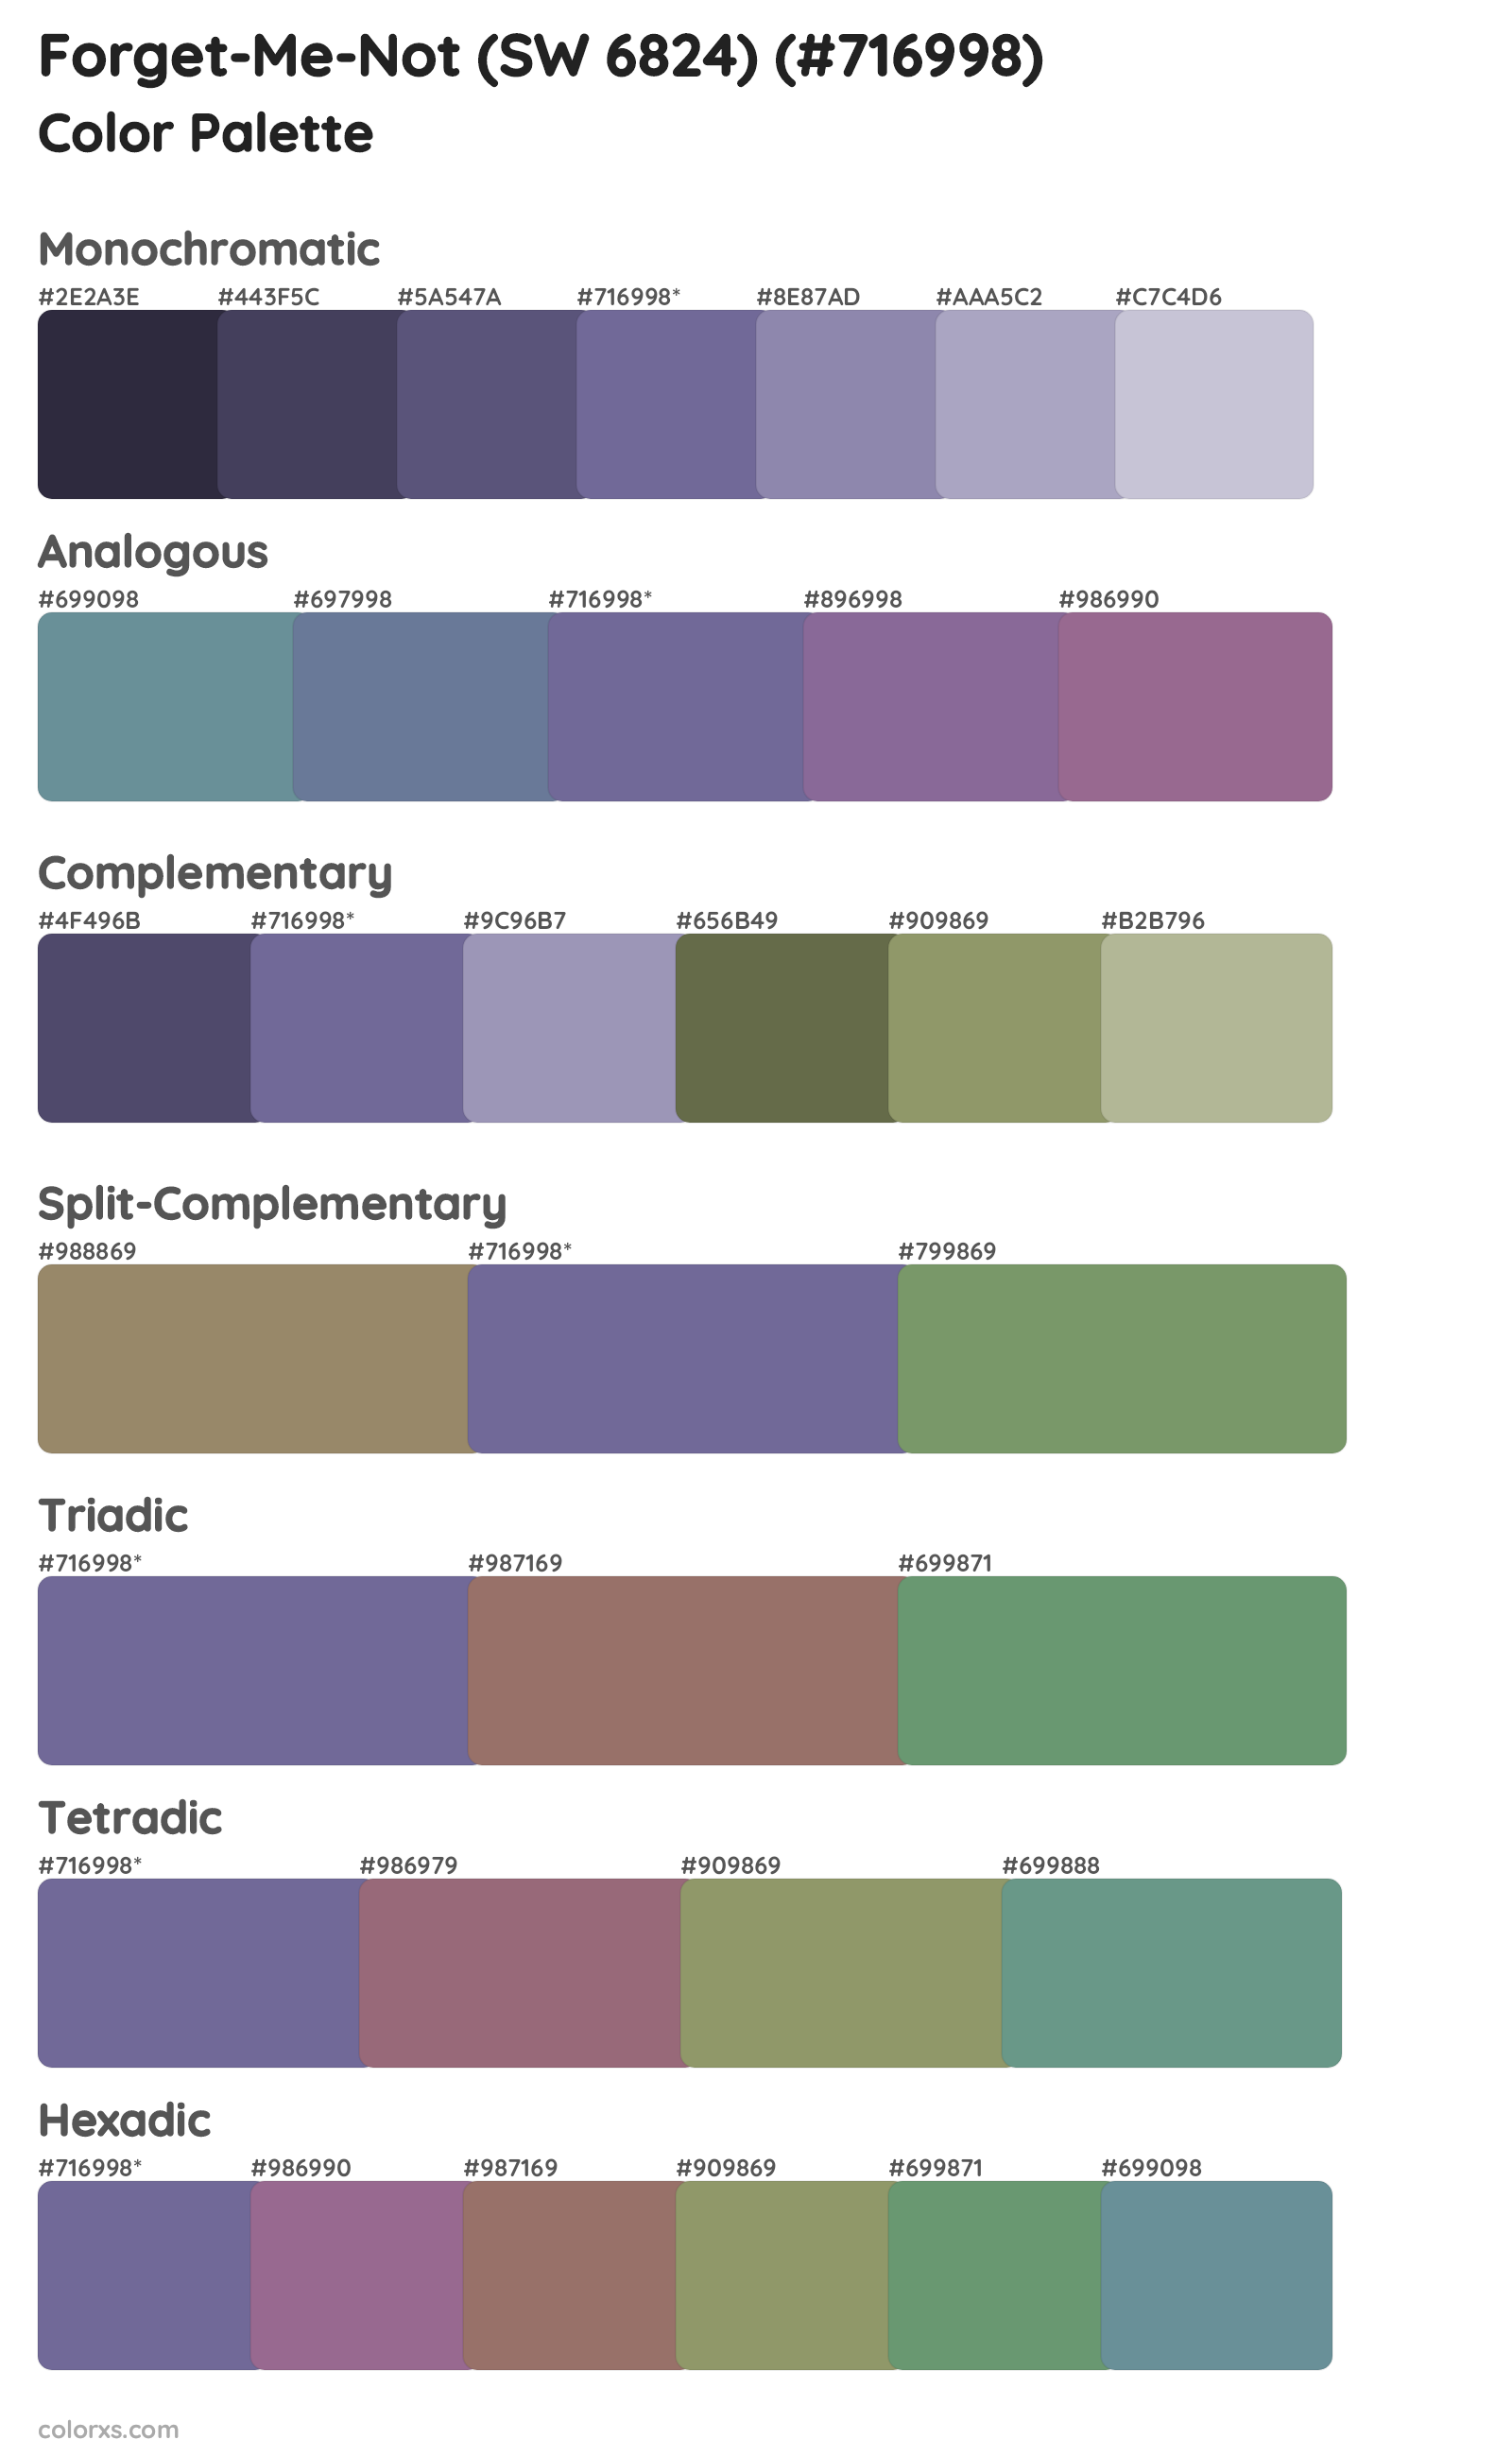 Forget-Me-Not (SW 6824) Color Scheme Palettes